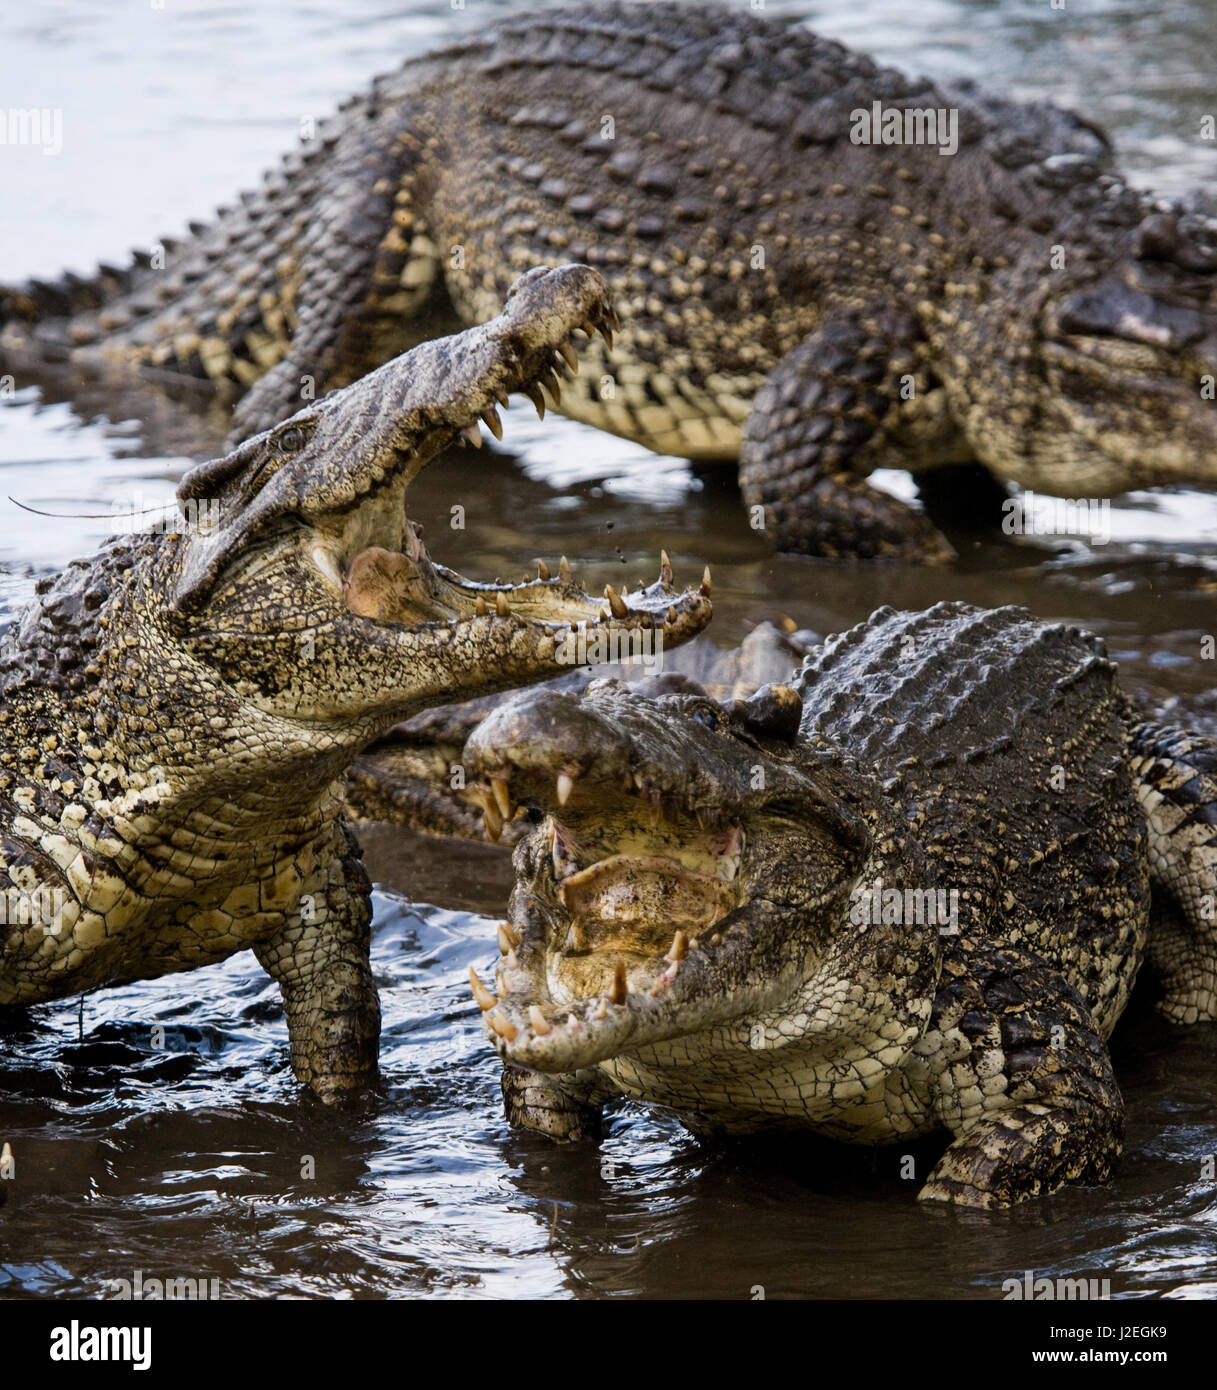 https://c8.alamy.com/compde/j2egk9/das-kubanische-krokodil-springt-aus-dem-wasser-ein-seltenes-foto-kuba-ungewohnlicher-winkel-j2egk9.jpg